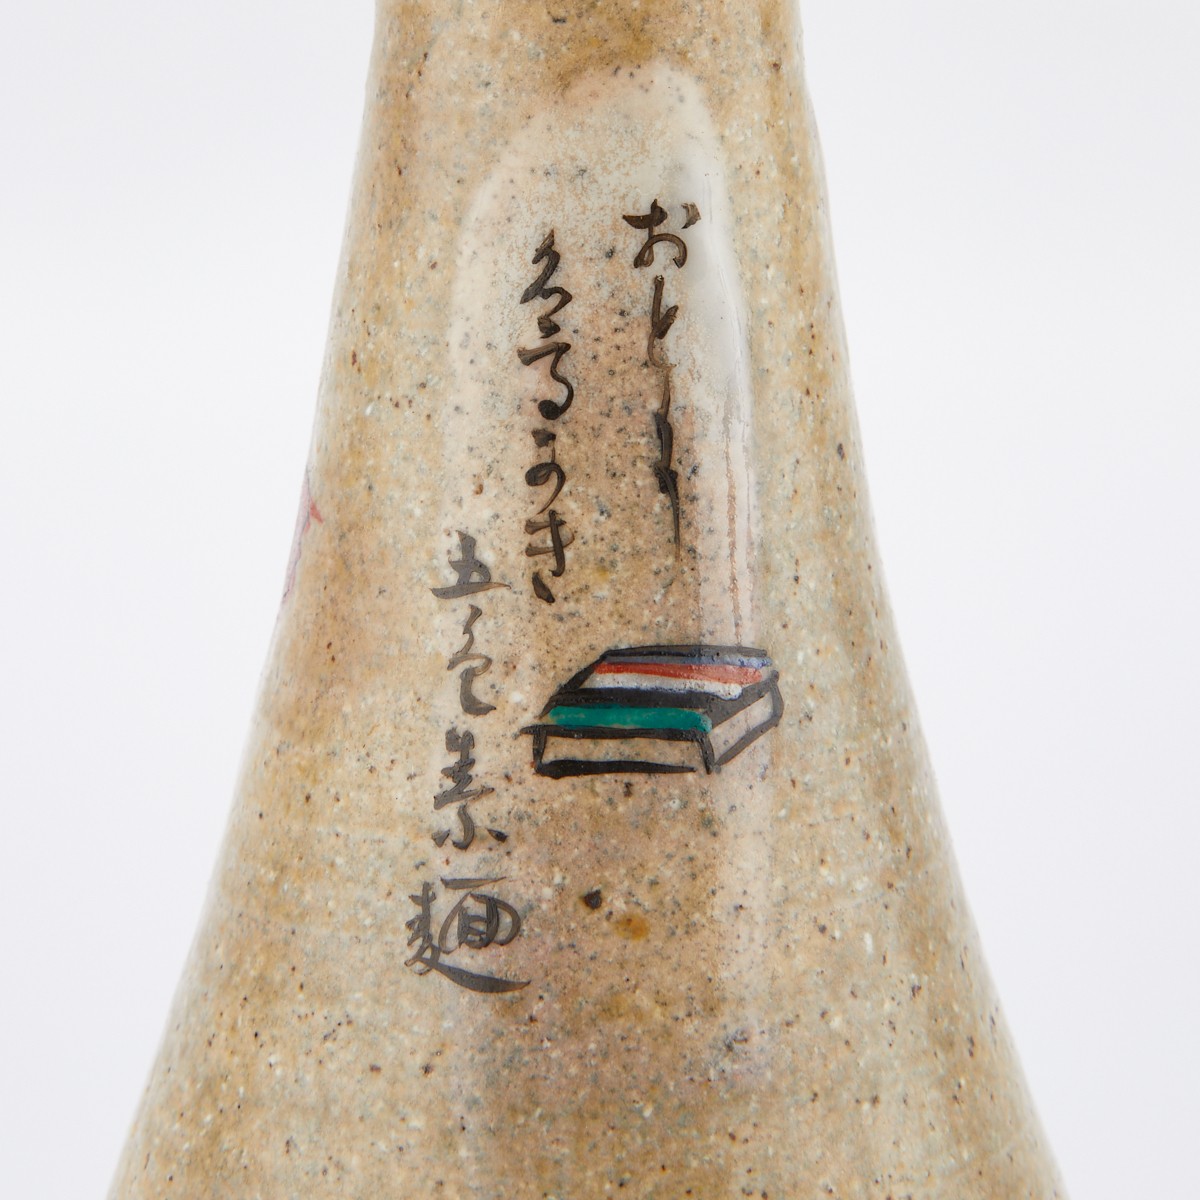 Grp: 4 Japanese Ceramic Sake Bottles 2 Pairs - Image 11 of 16